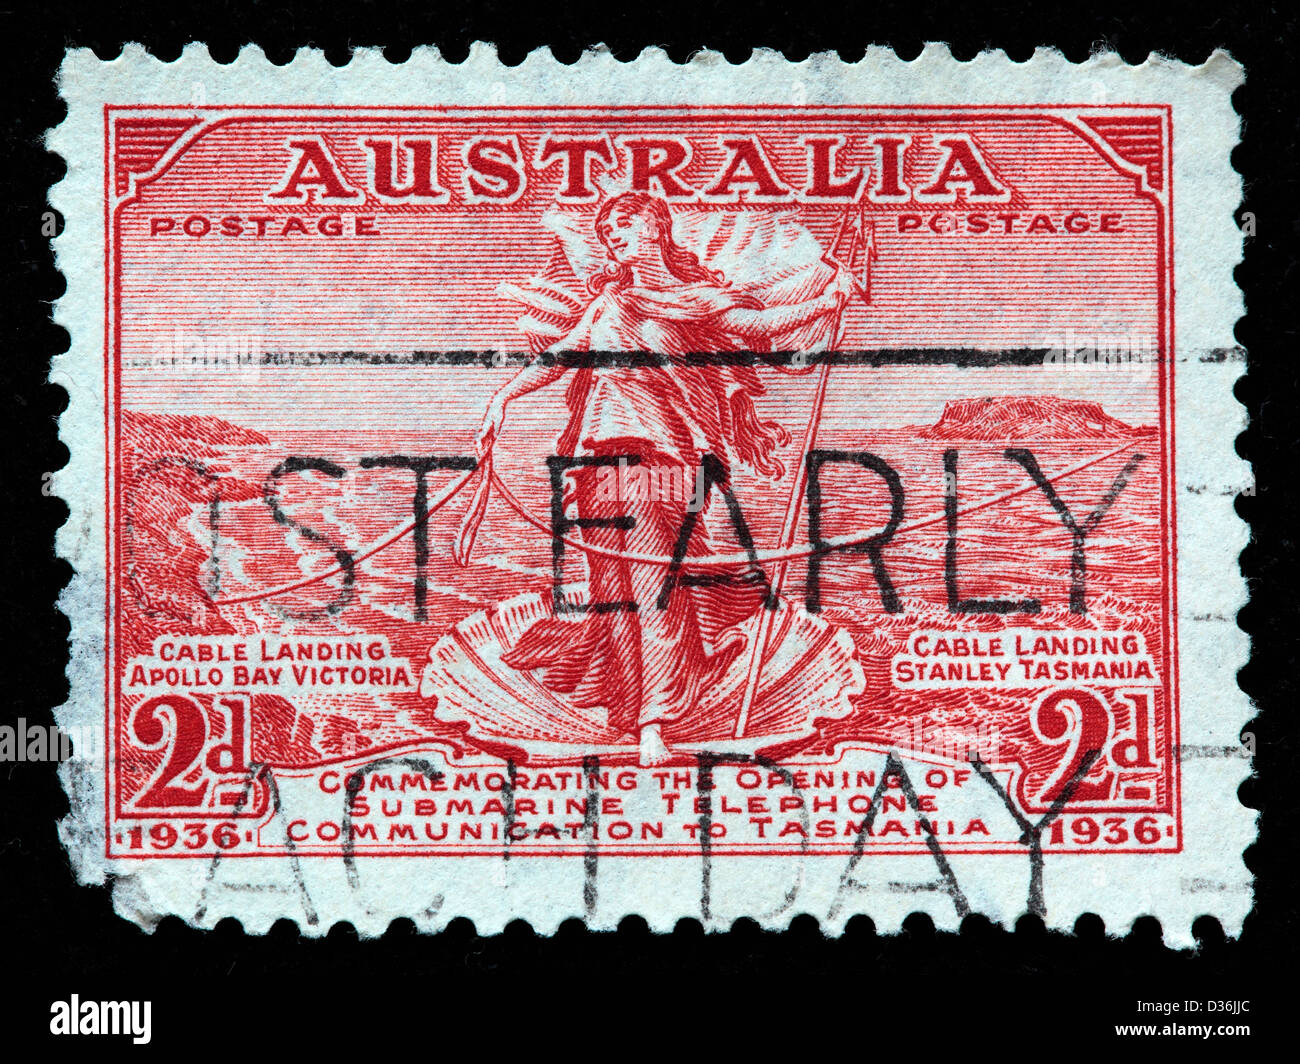 Australien-Tasmanien Telefonverbindung, Briefmarke, Australien, 1936 Stockfoto